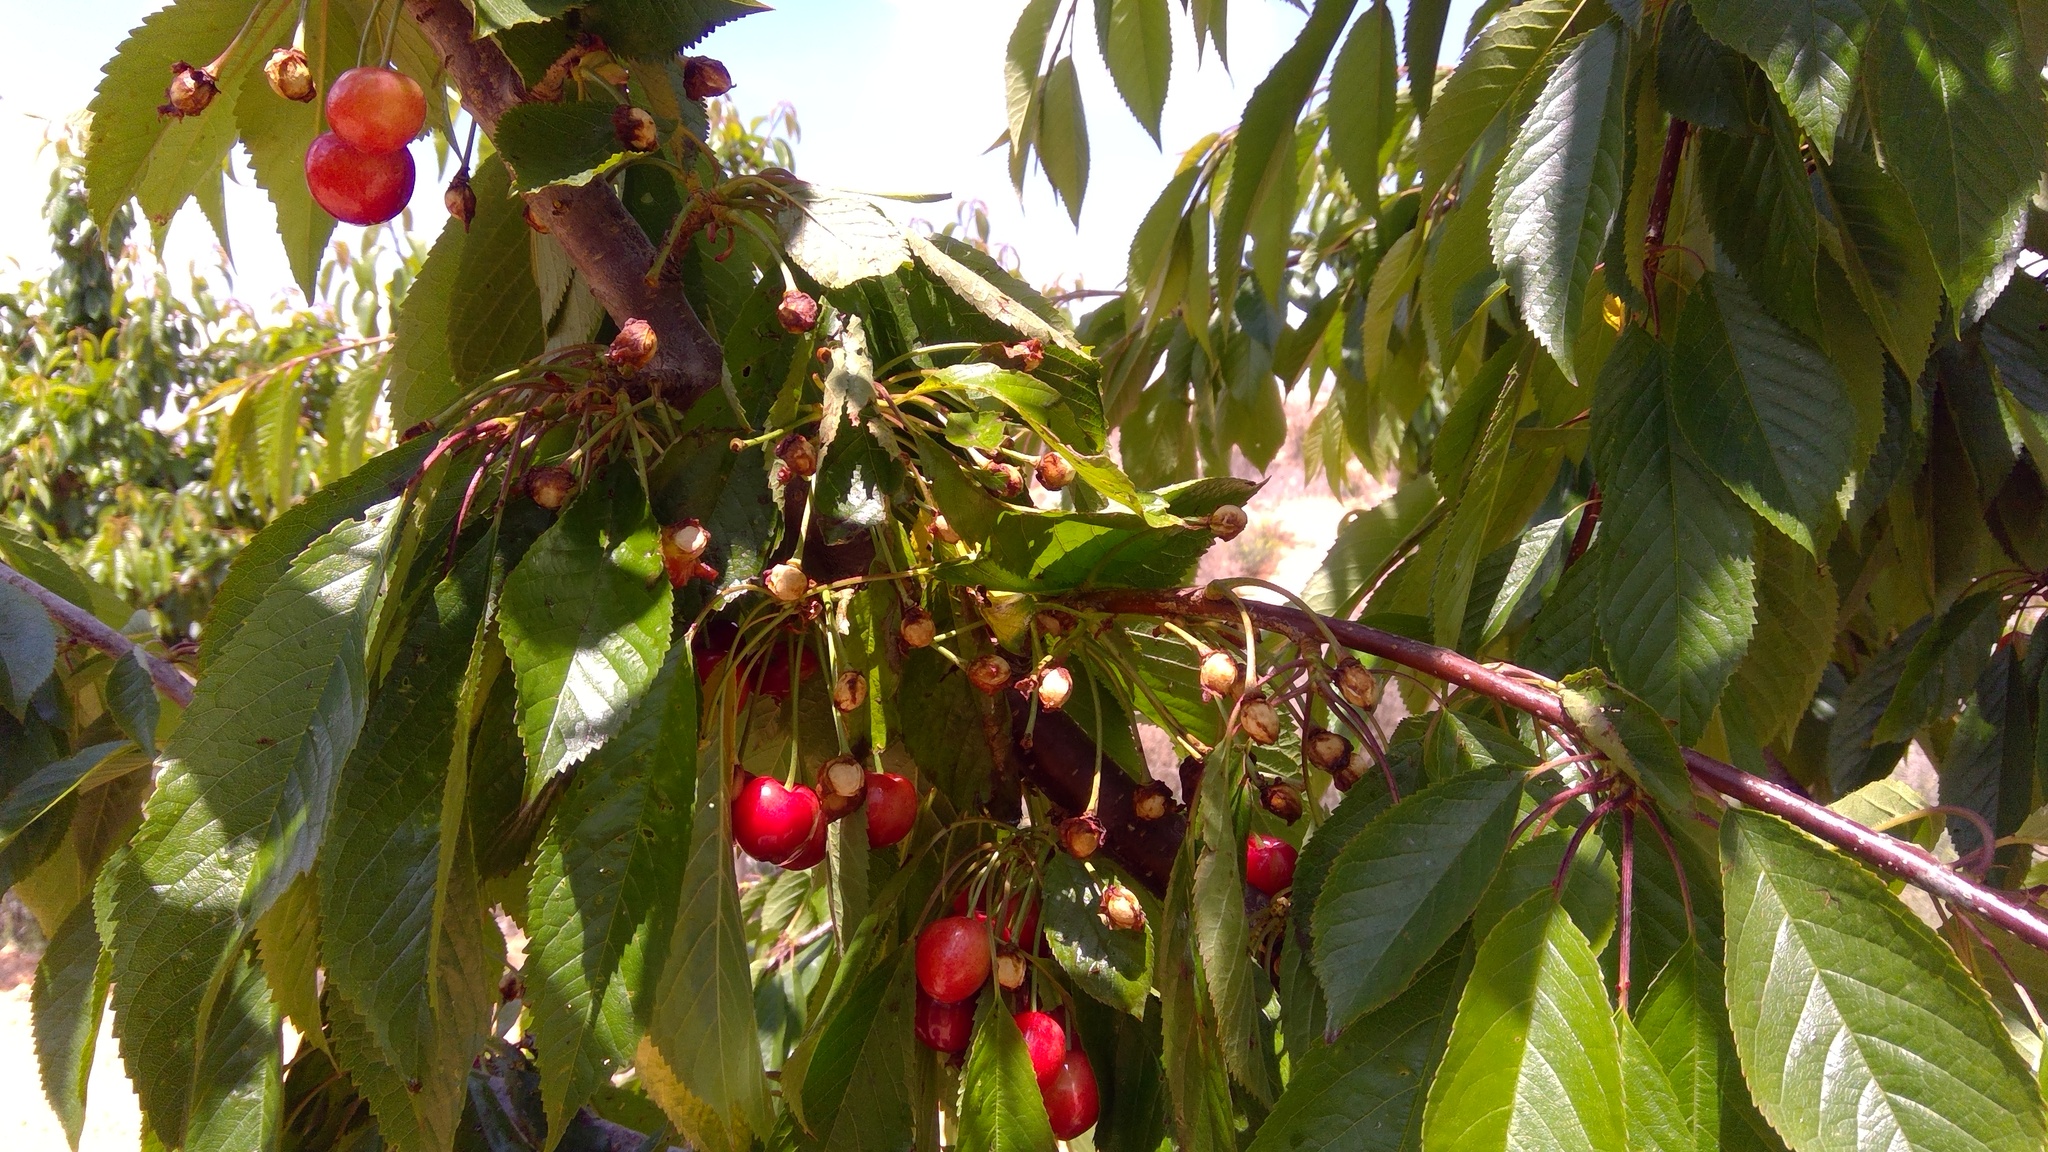 Árbol de cerezo en producción donde se pueden apreciar la fruta de las cerezas